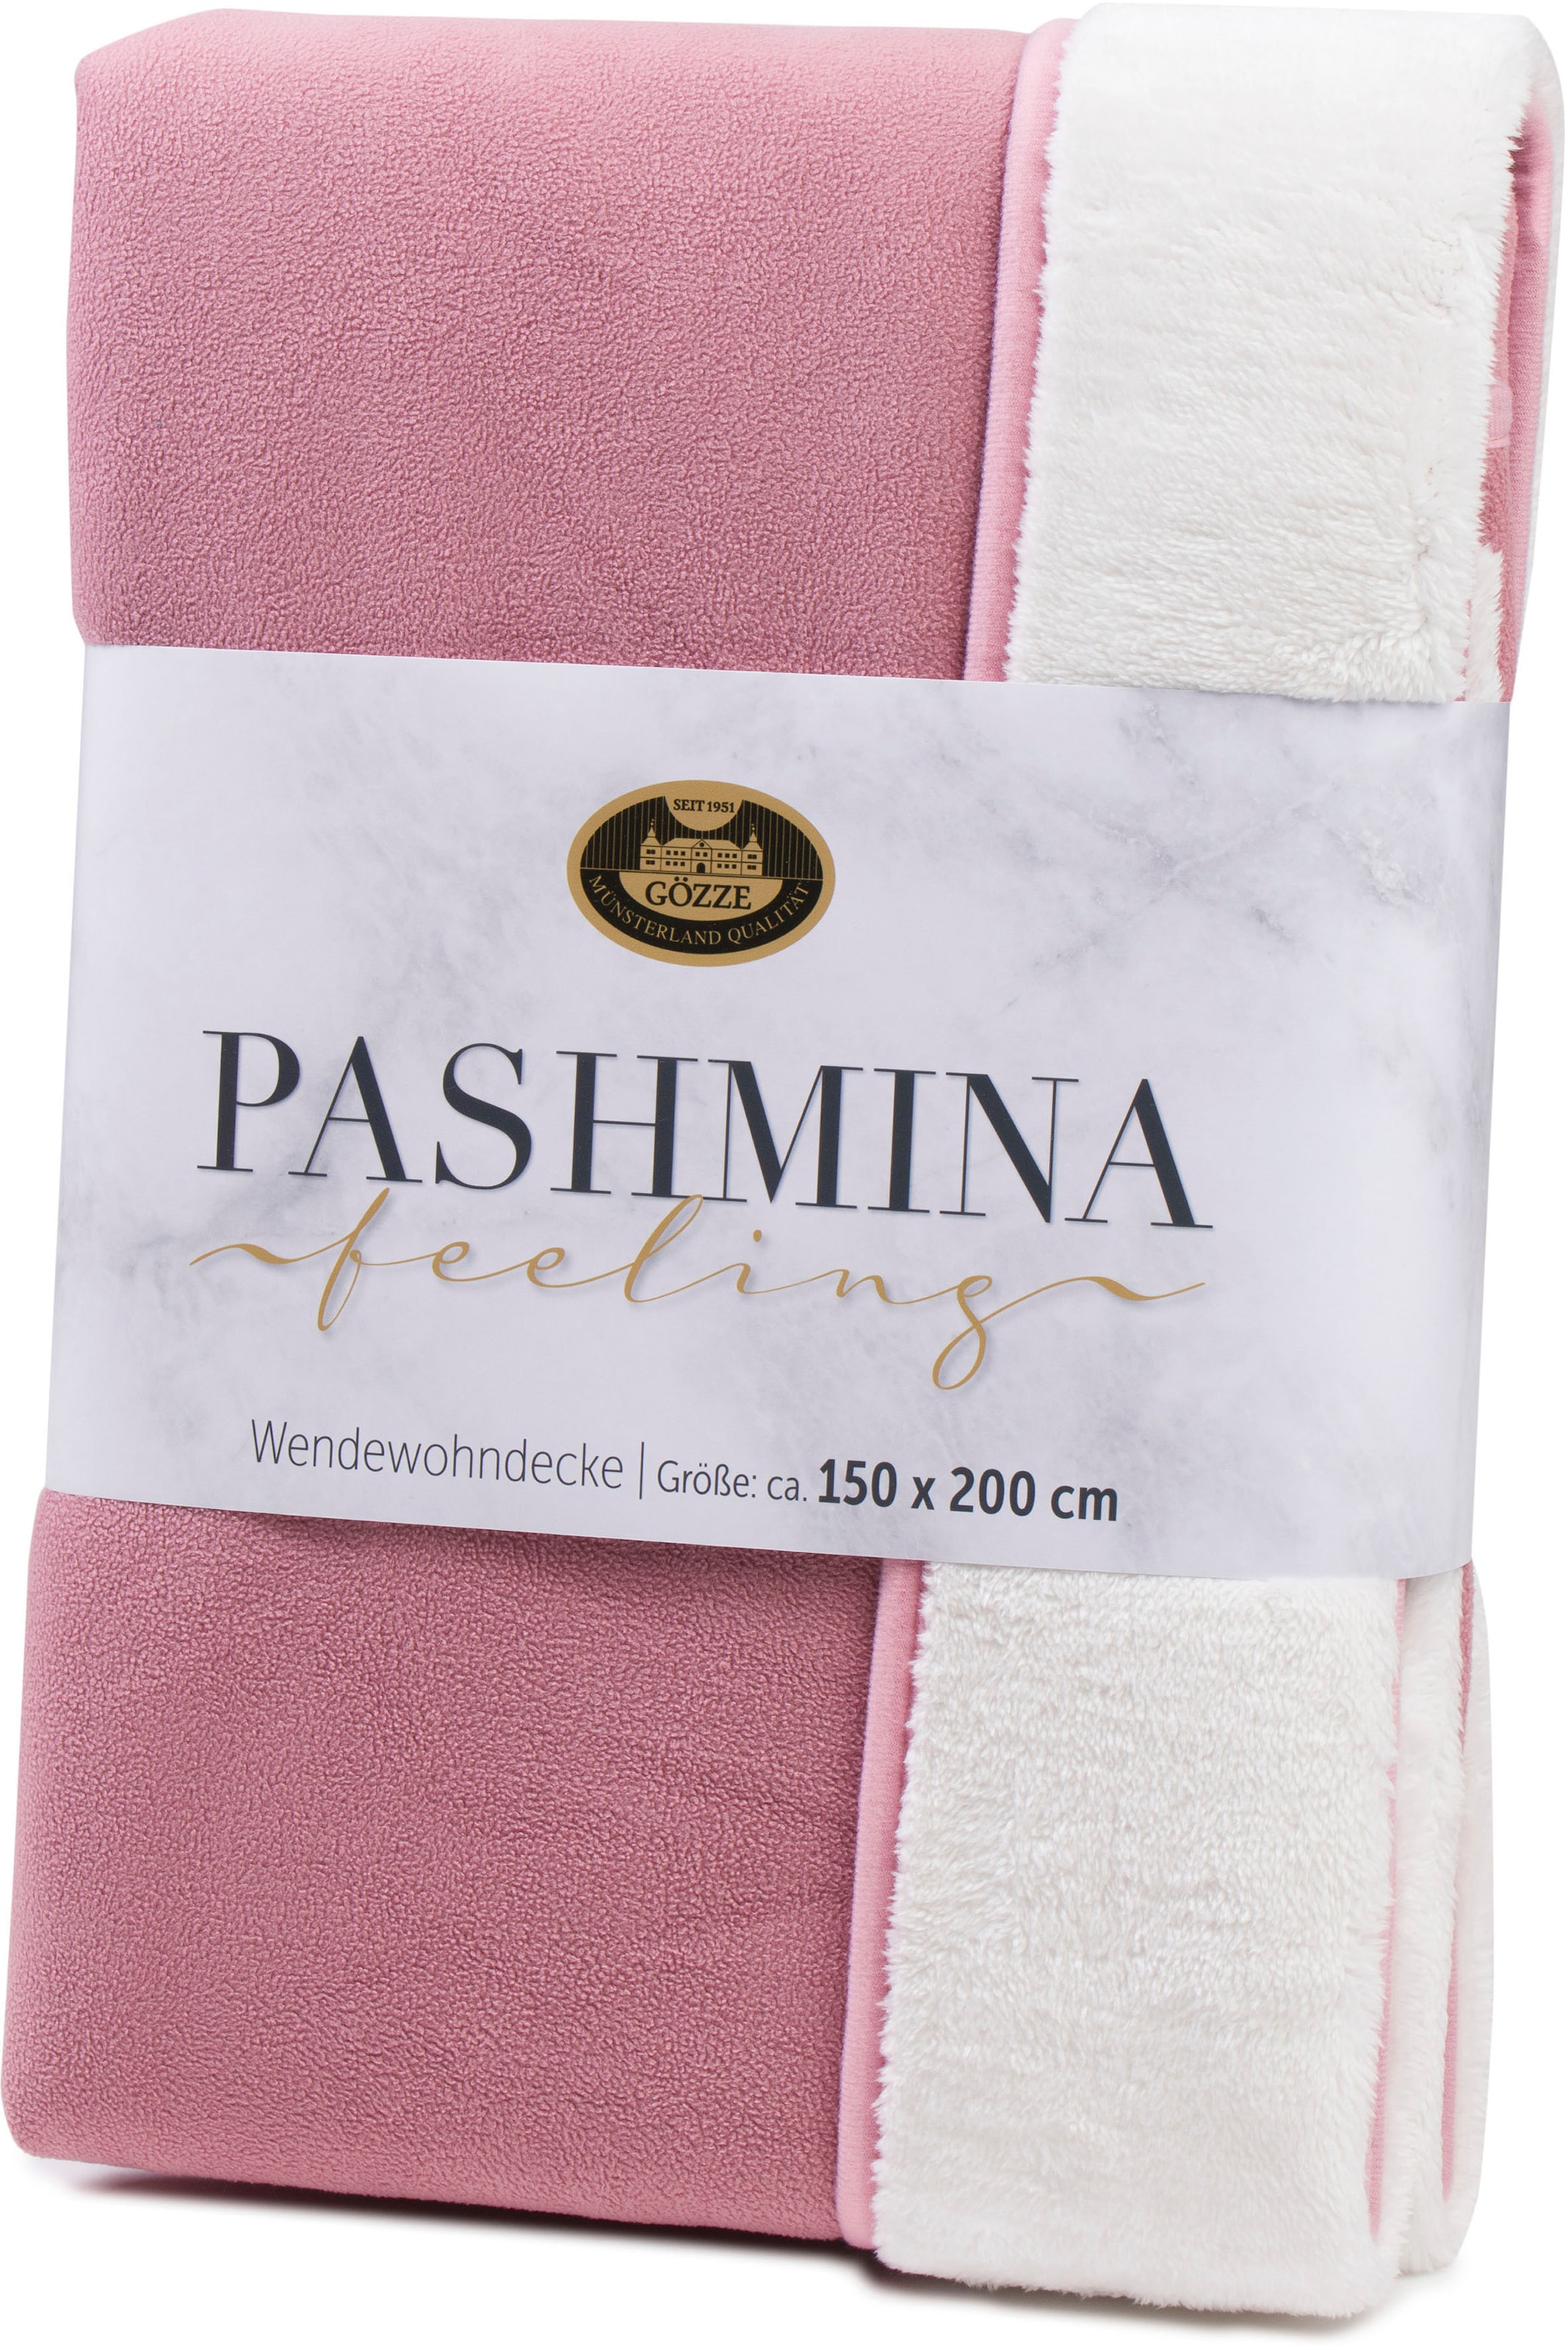 »Pashmina schlichte bequem Wendewohndecke«, schnell Wohndecke flauschig Gözze bestellen Unterseite und